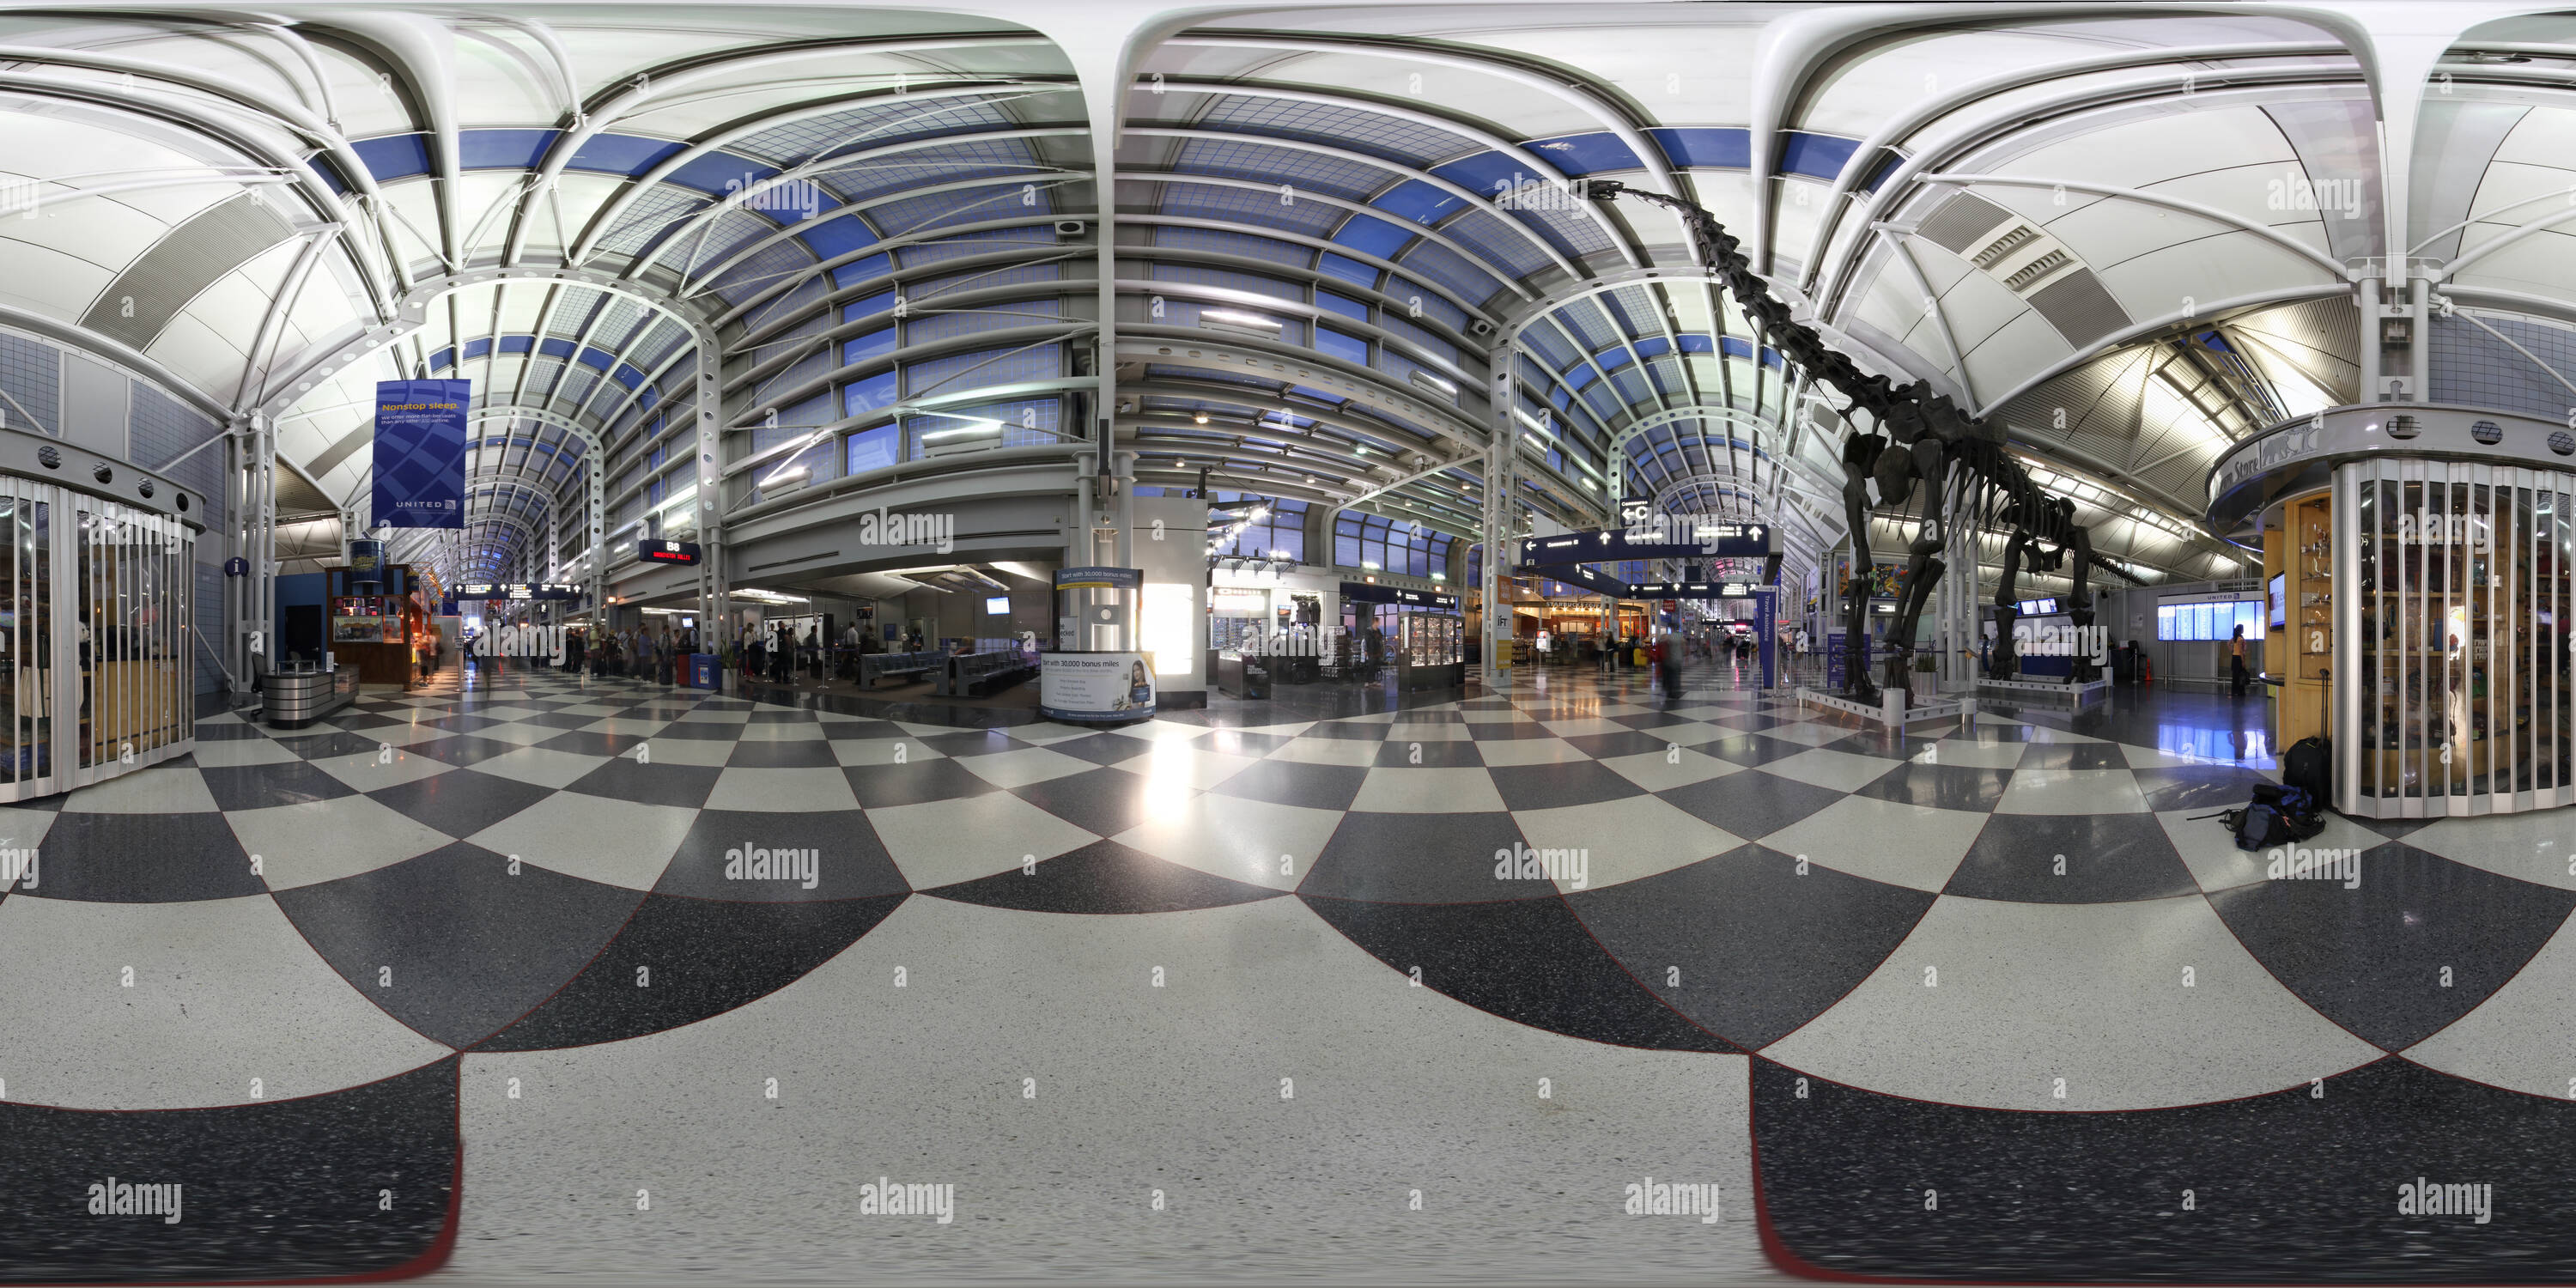 Vue panoramique à 360° de À l'intérieur O'Hare Airport - Terminal B